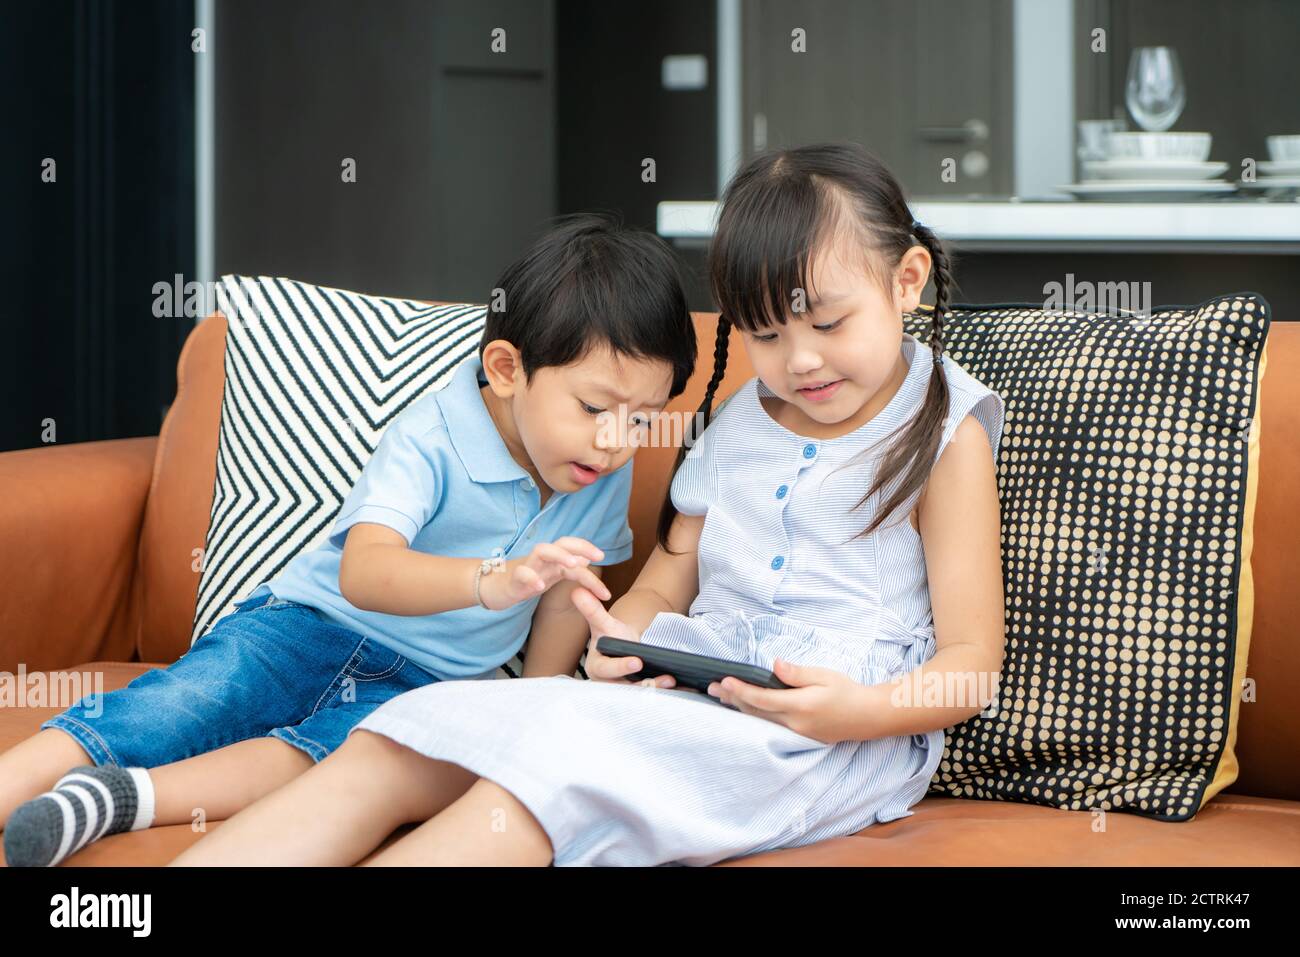 Enfant asiatique mignon frère à l'aide d'un smartphone et souriant pour regarder une vidéo ou jouer à un jeu tout en étant assis sur un canapé dans le salon à la maison Banque D'Images